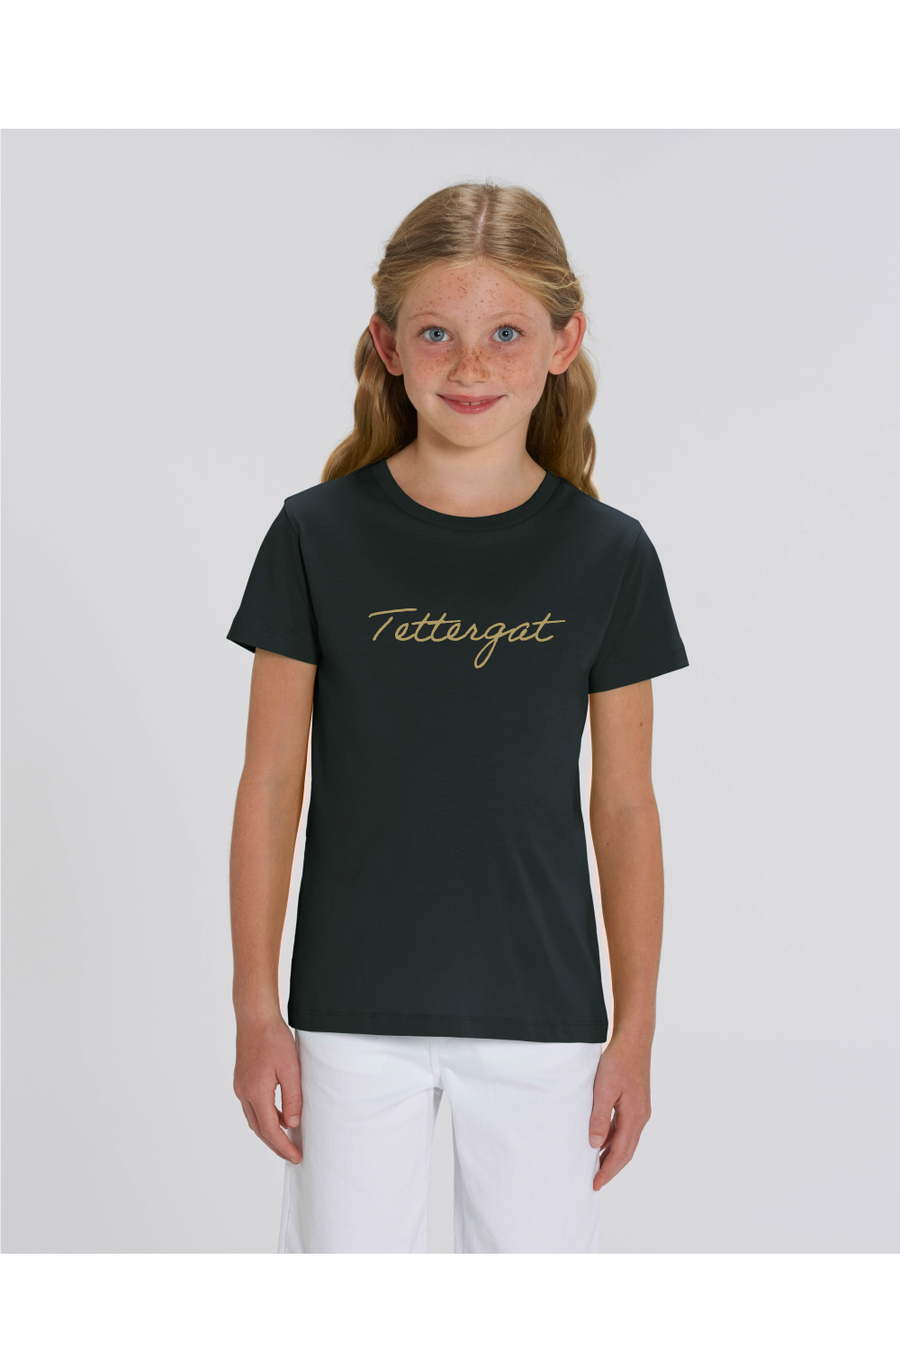 Tettergat kids t-shirt - Joh Clothing